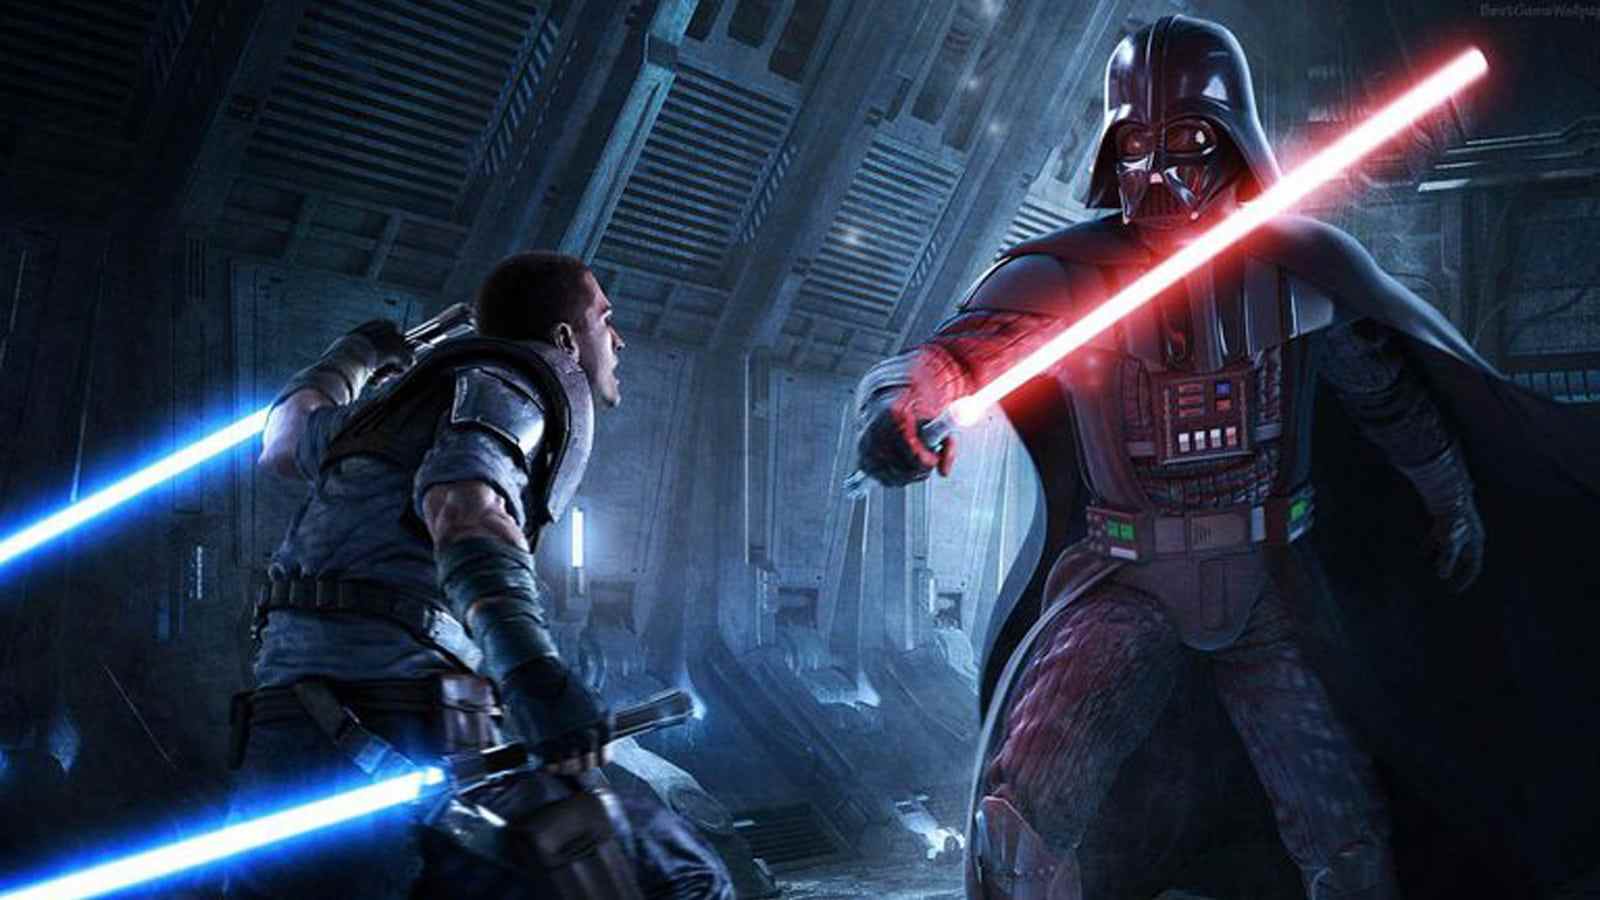 nous avons besoin d'une simulation de jeu vidéo réaliste de haine et de douleur du seigneur Sith Darth Vader Star Wars de Lucasfilm Games